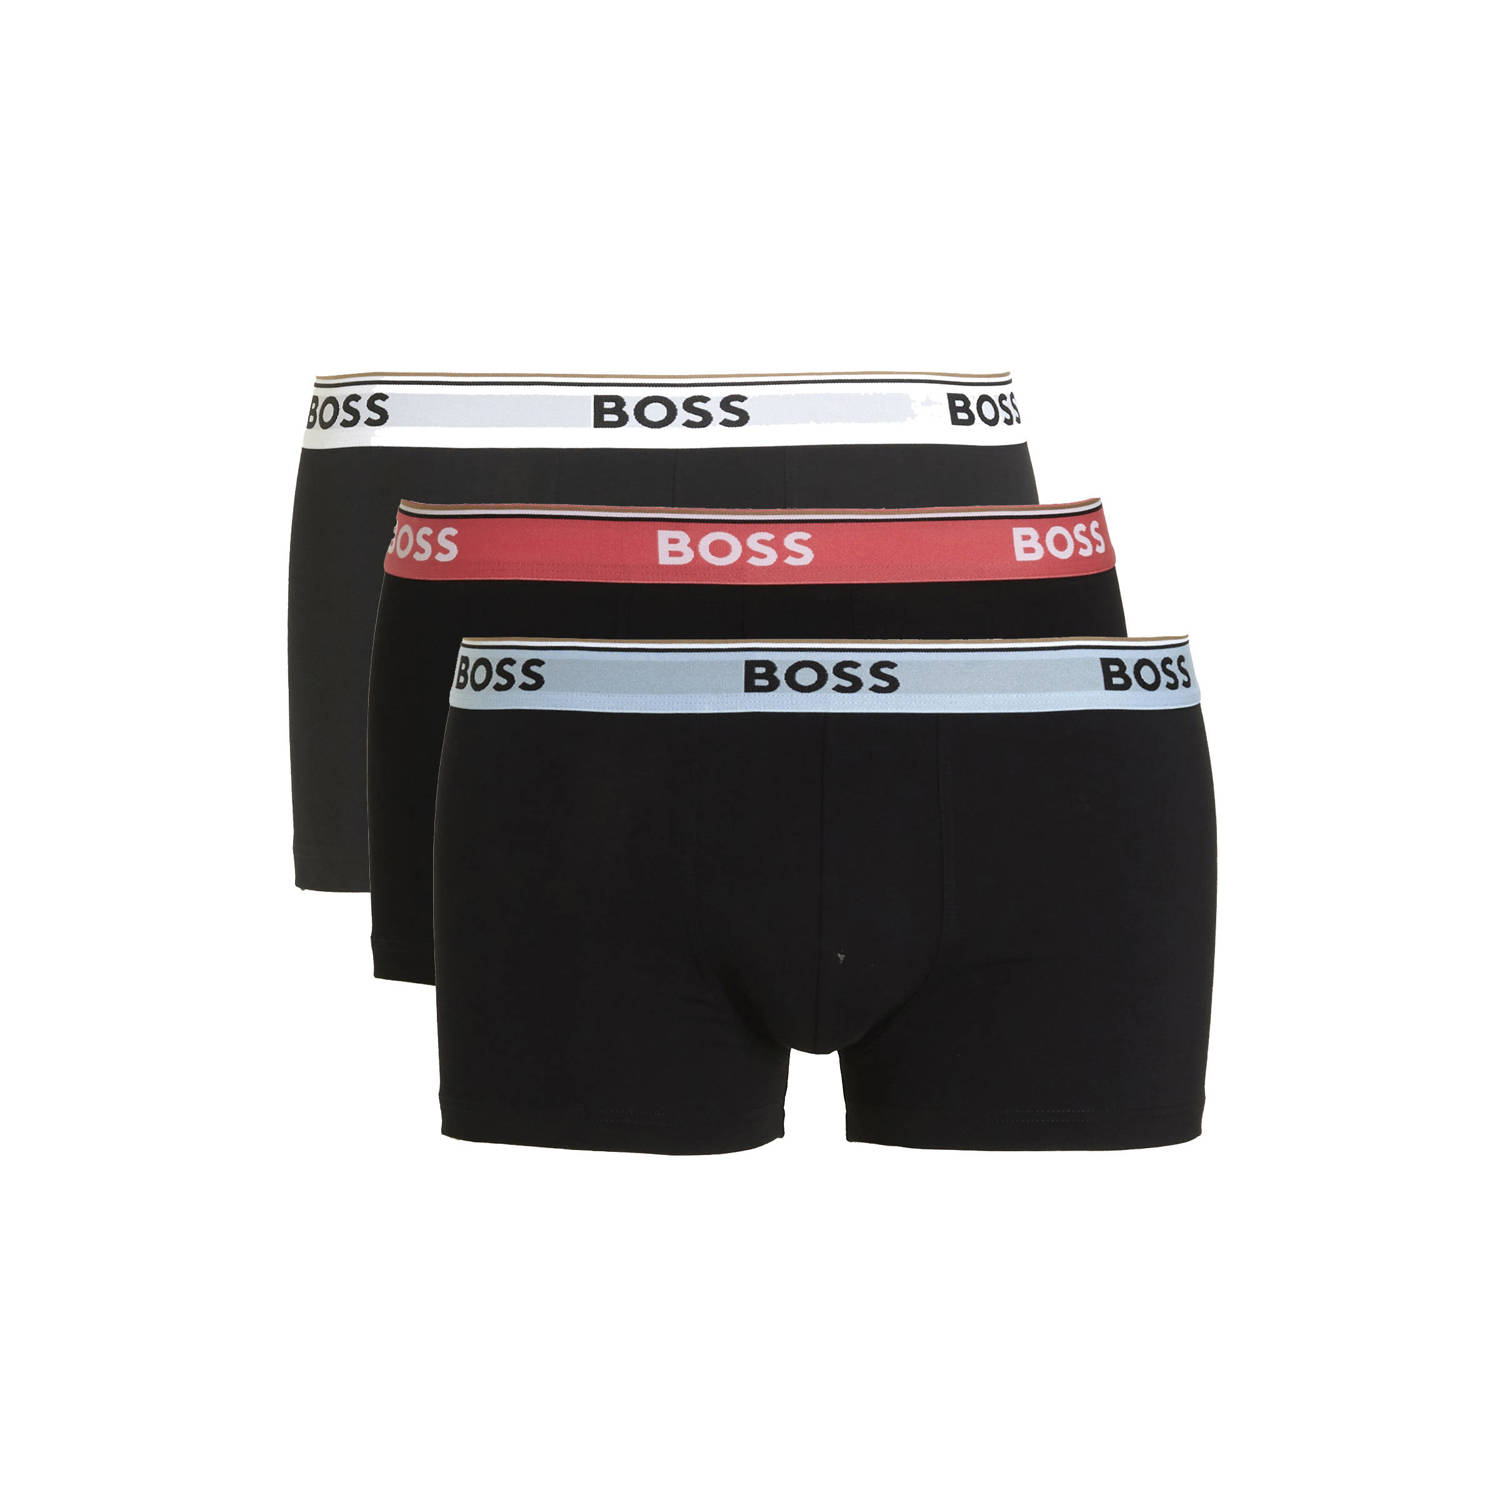 BOSS boxershort (set van 3)